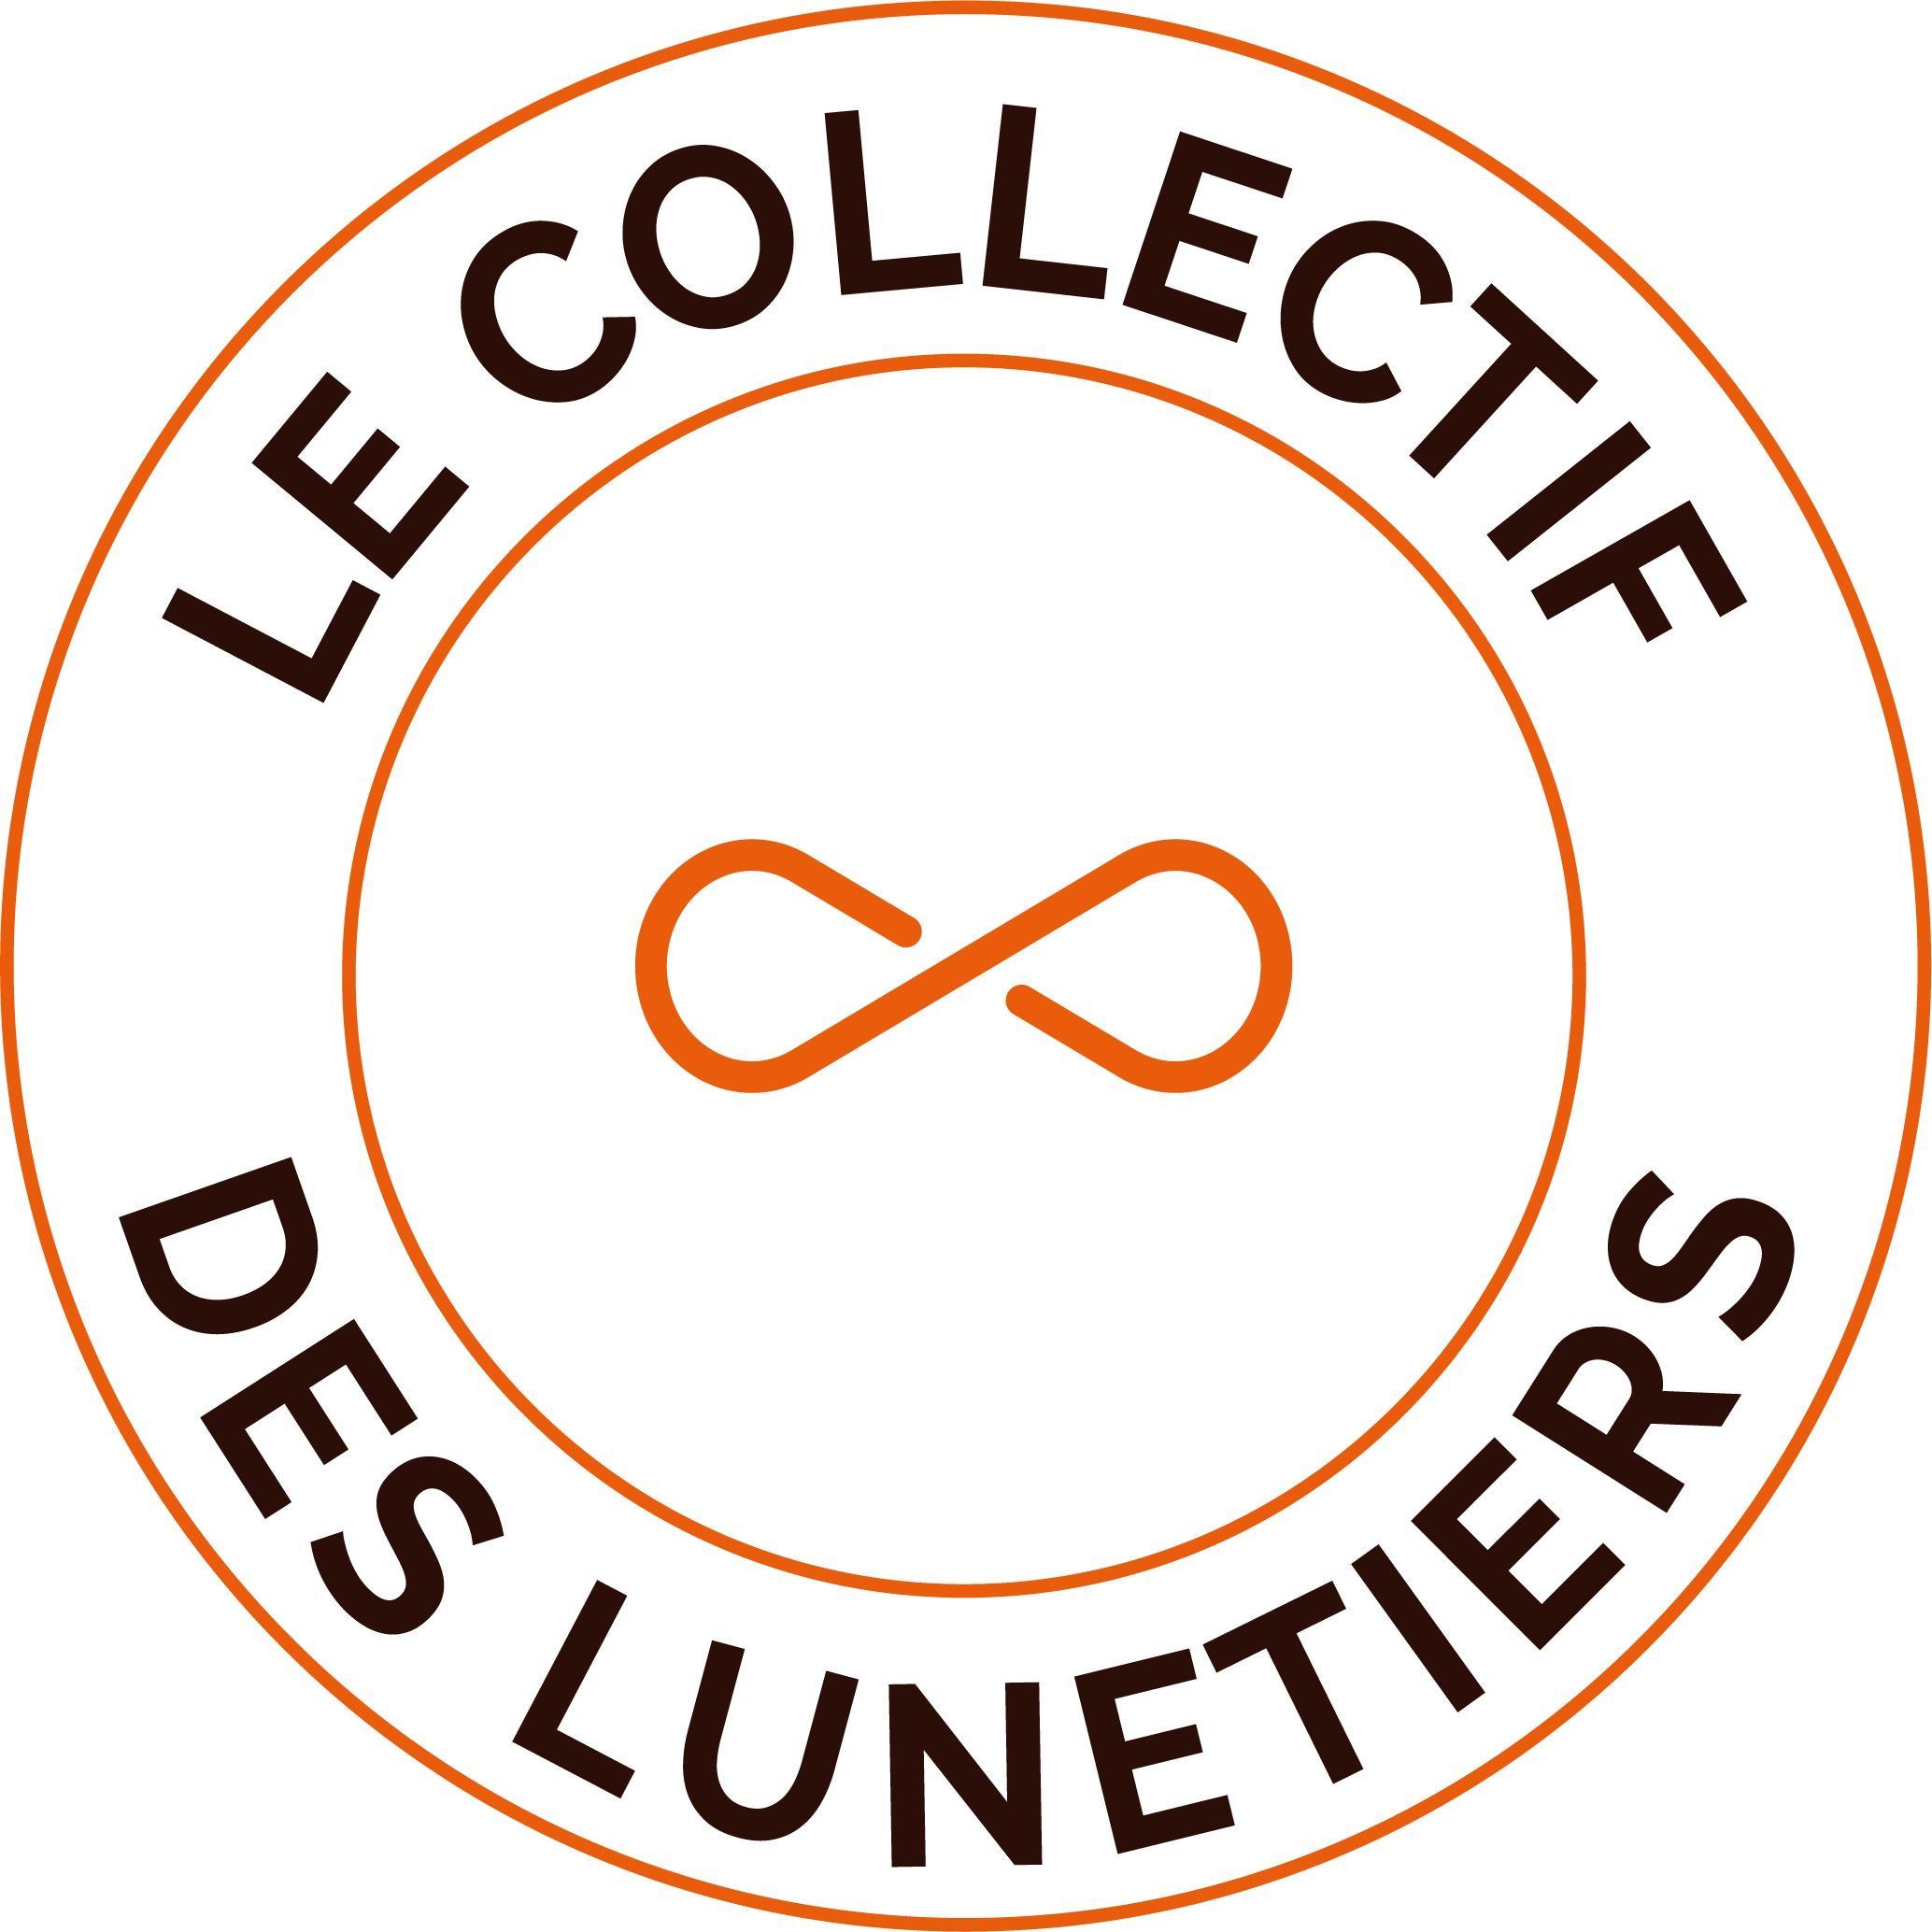 Le Collectif Des Lunetiers Allauch